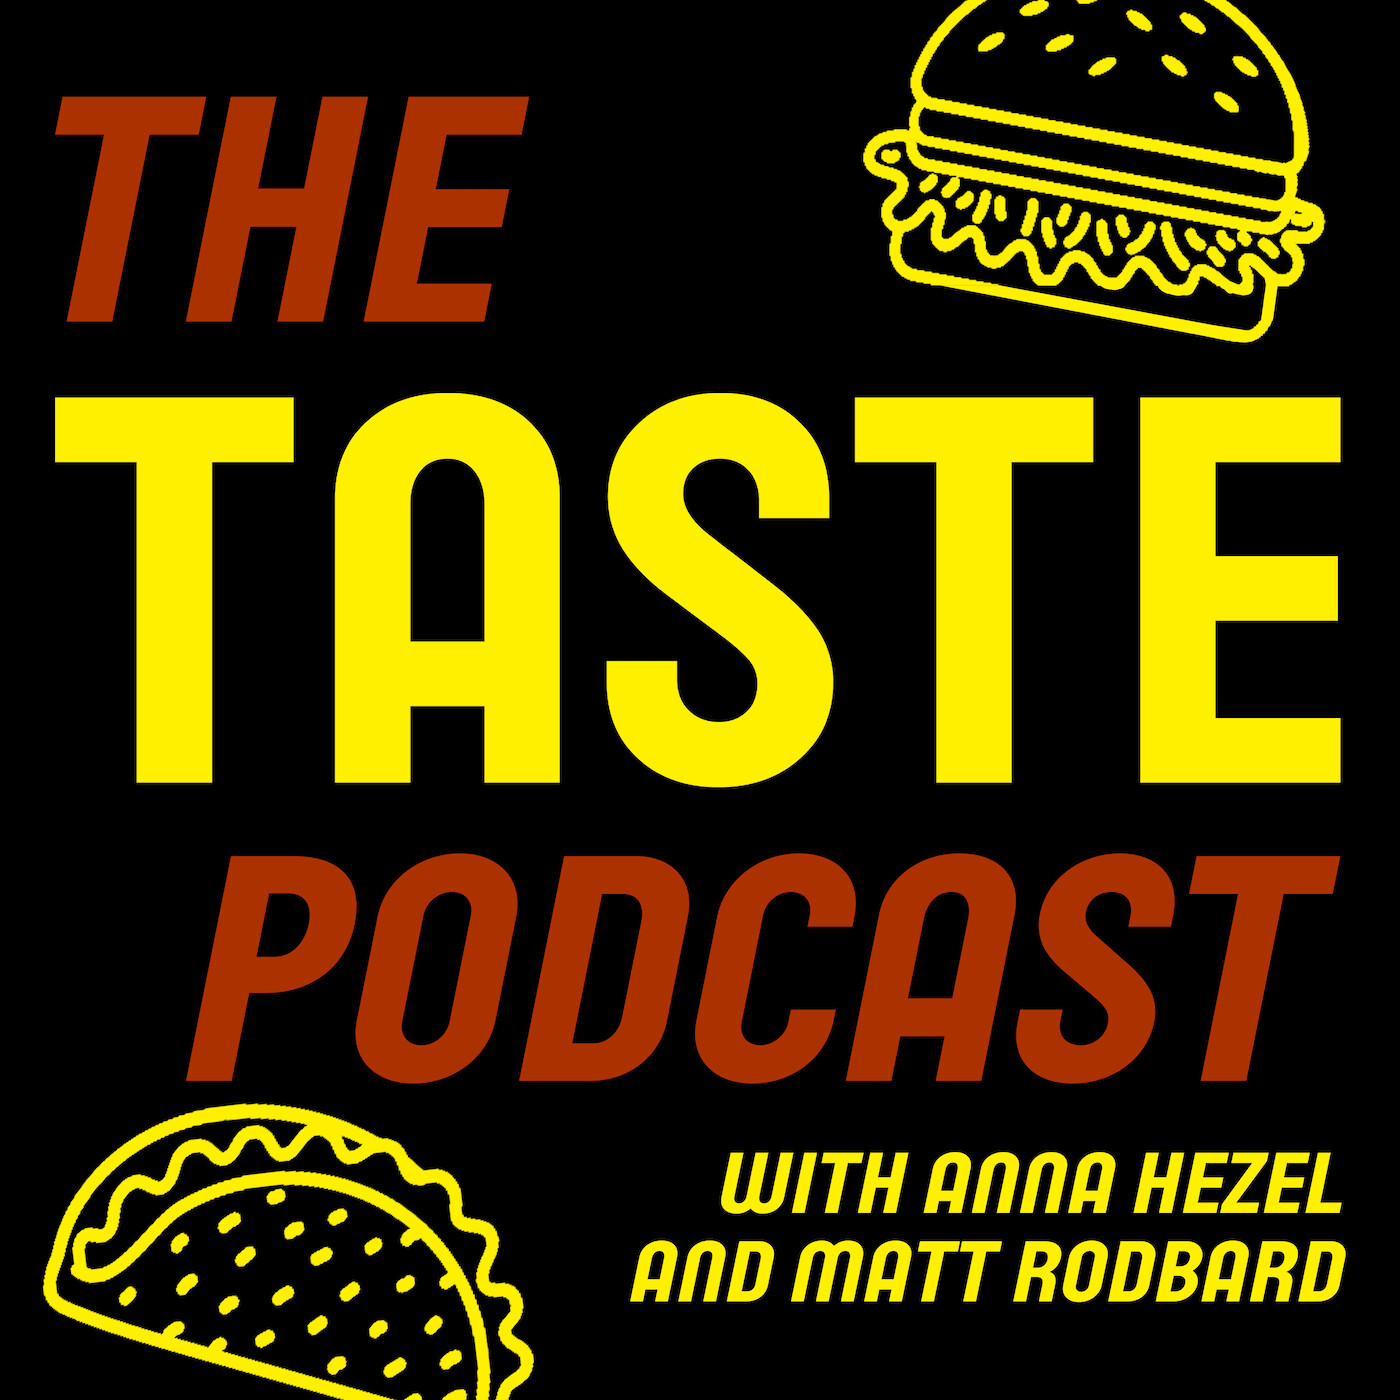 The TASTE Podcast